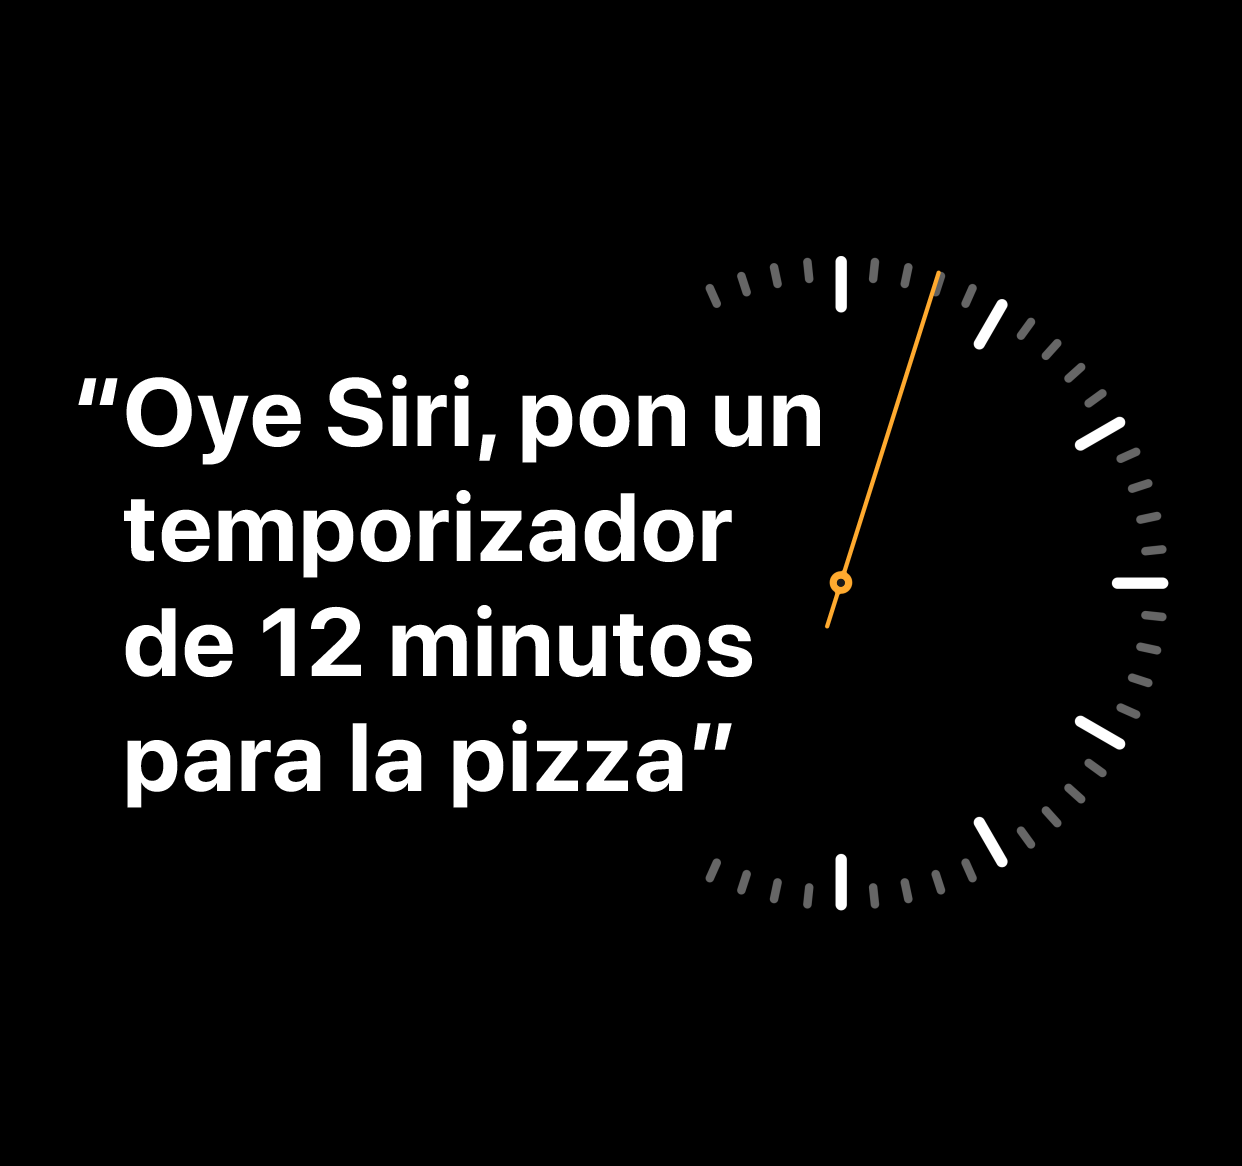 Una ilustración que muestra las palabras "Oye Siri, pon un temporizador de 12 minutos para la pizza"